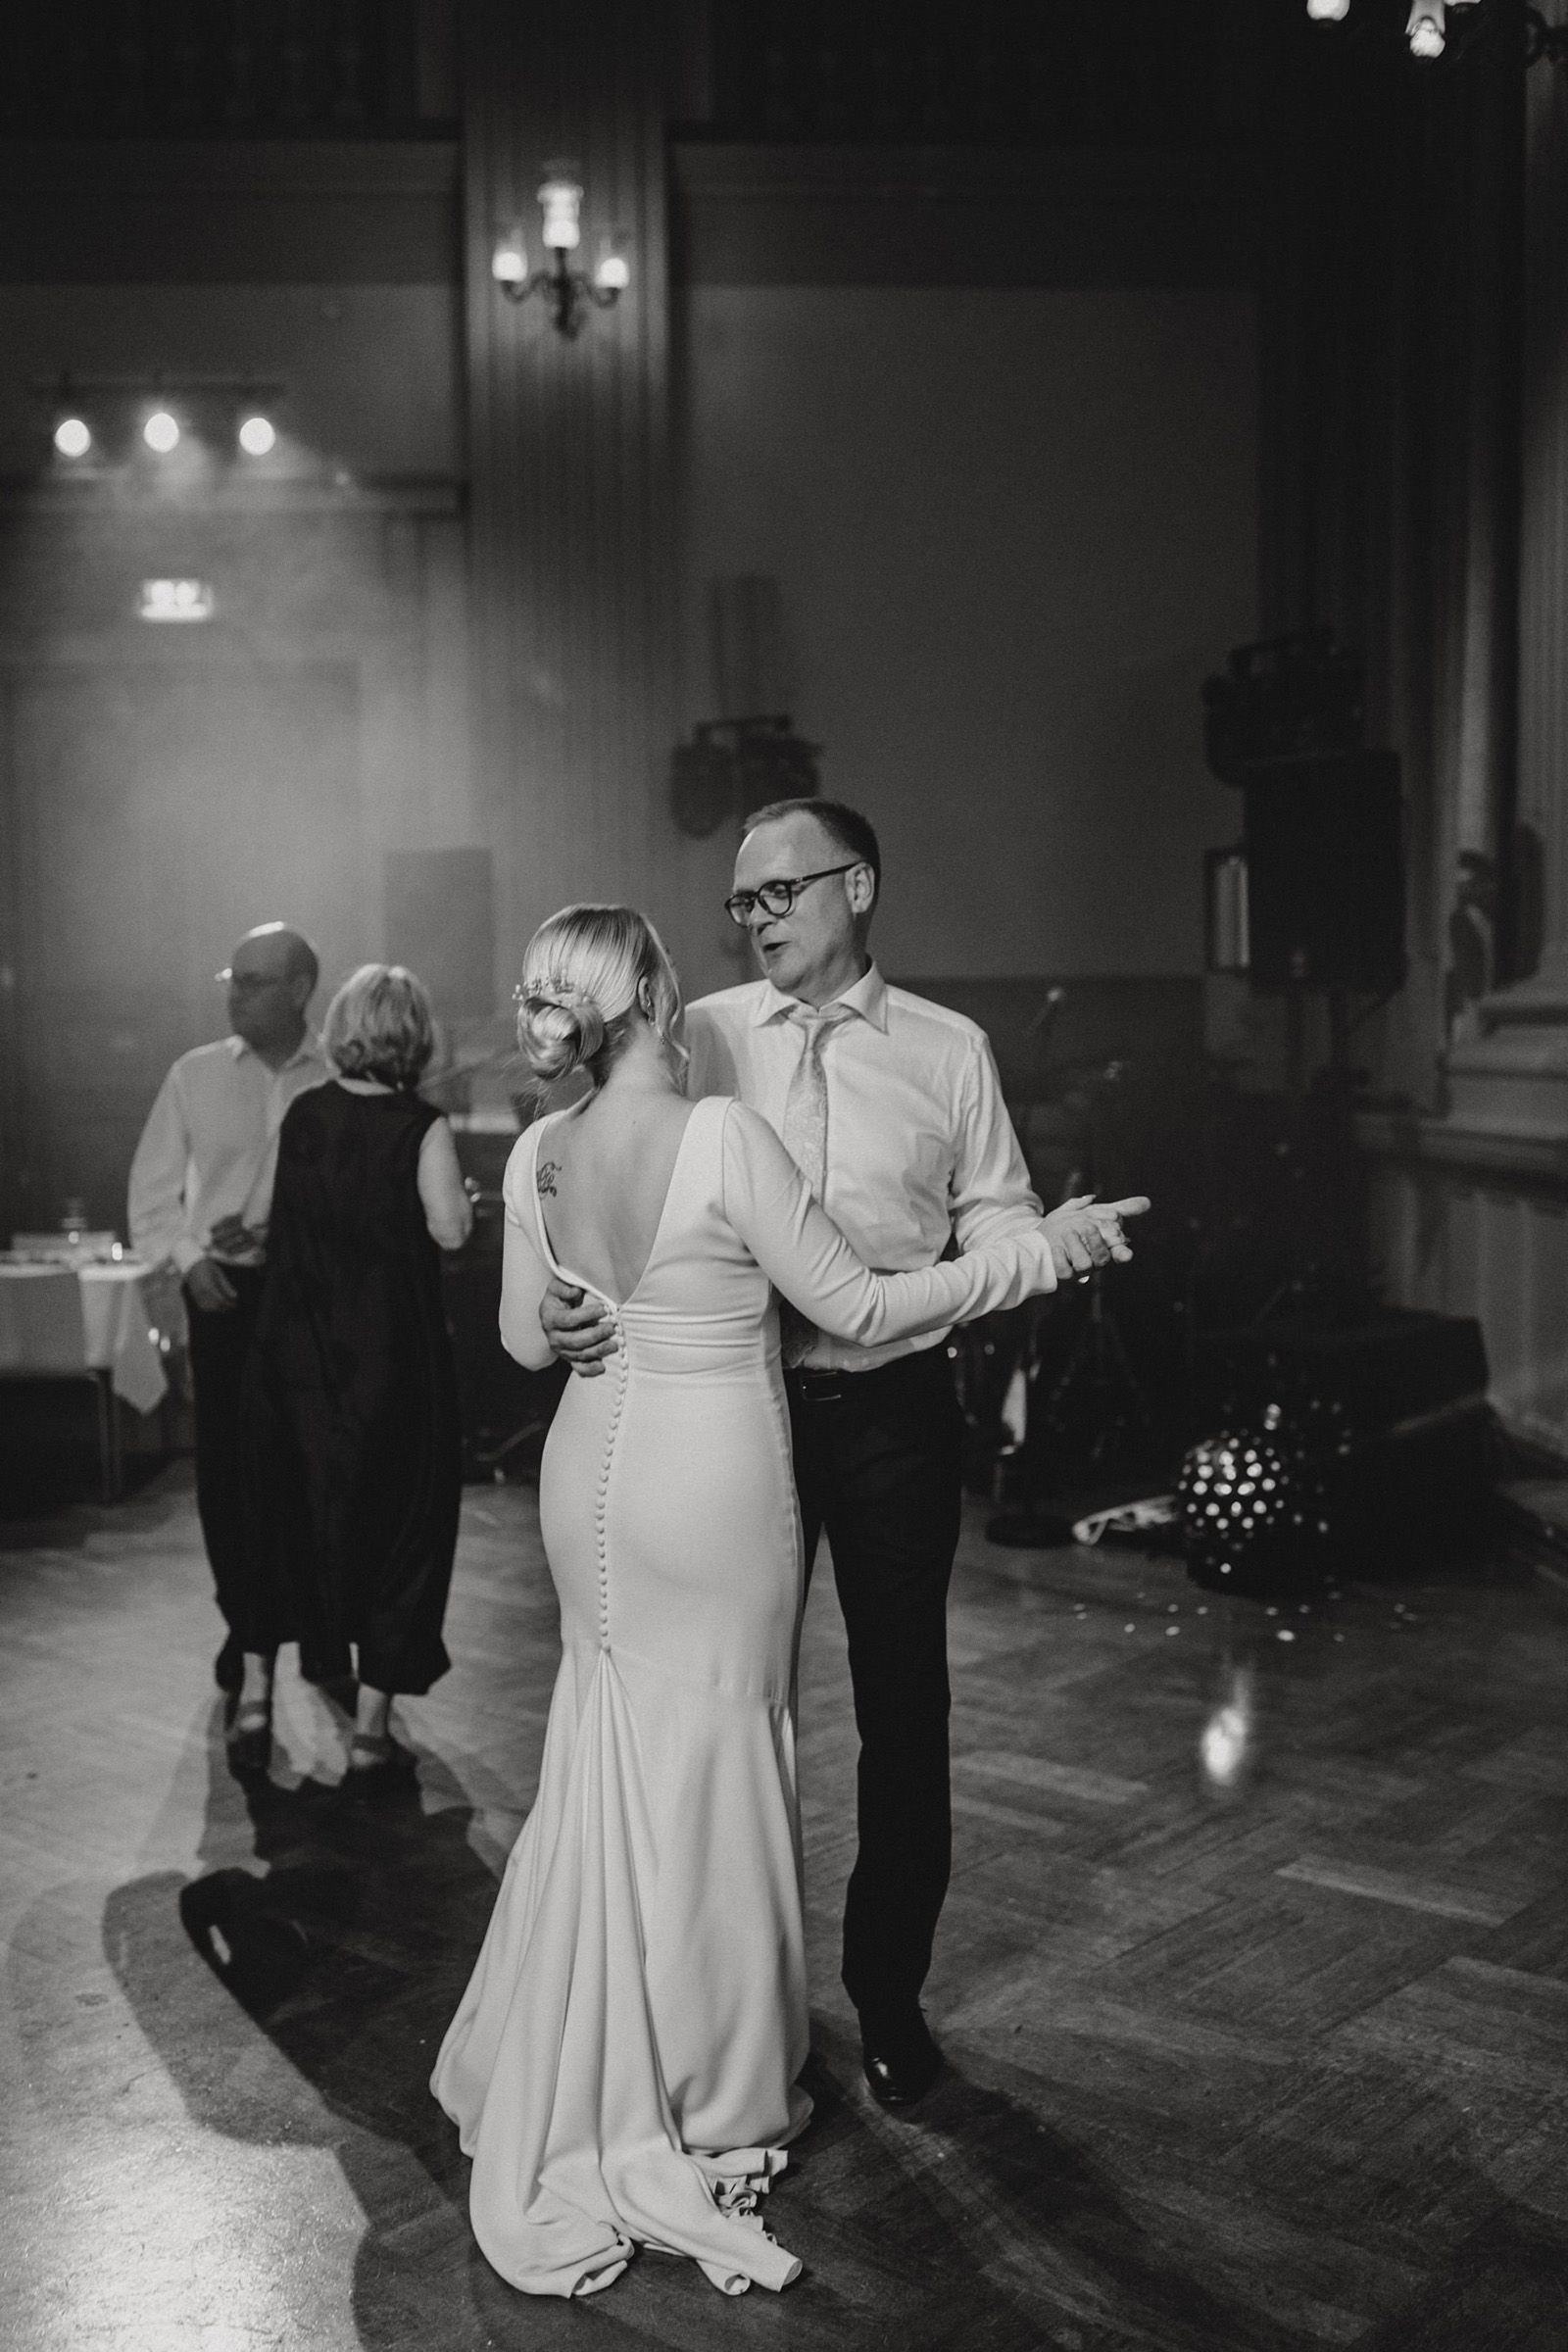  hääjuhla G18 Events bride and father dancing